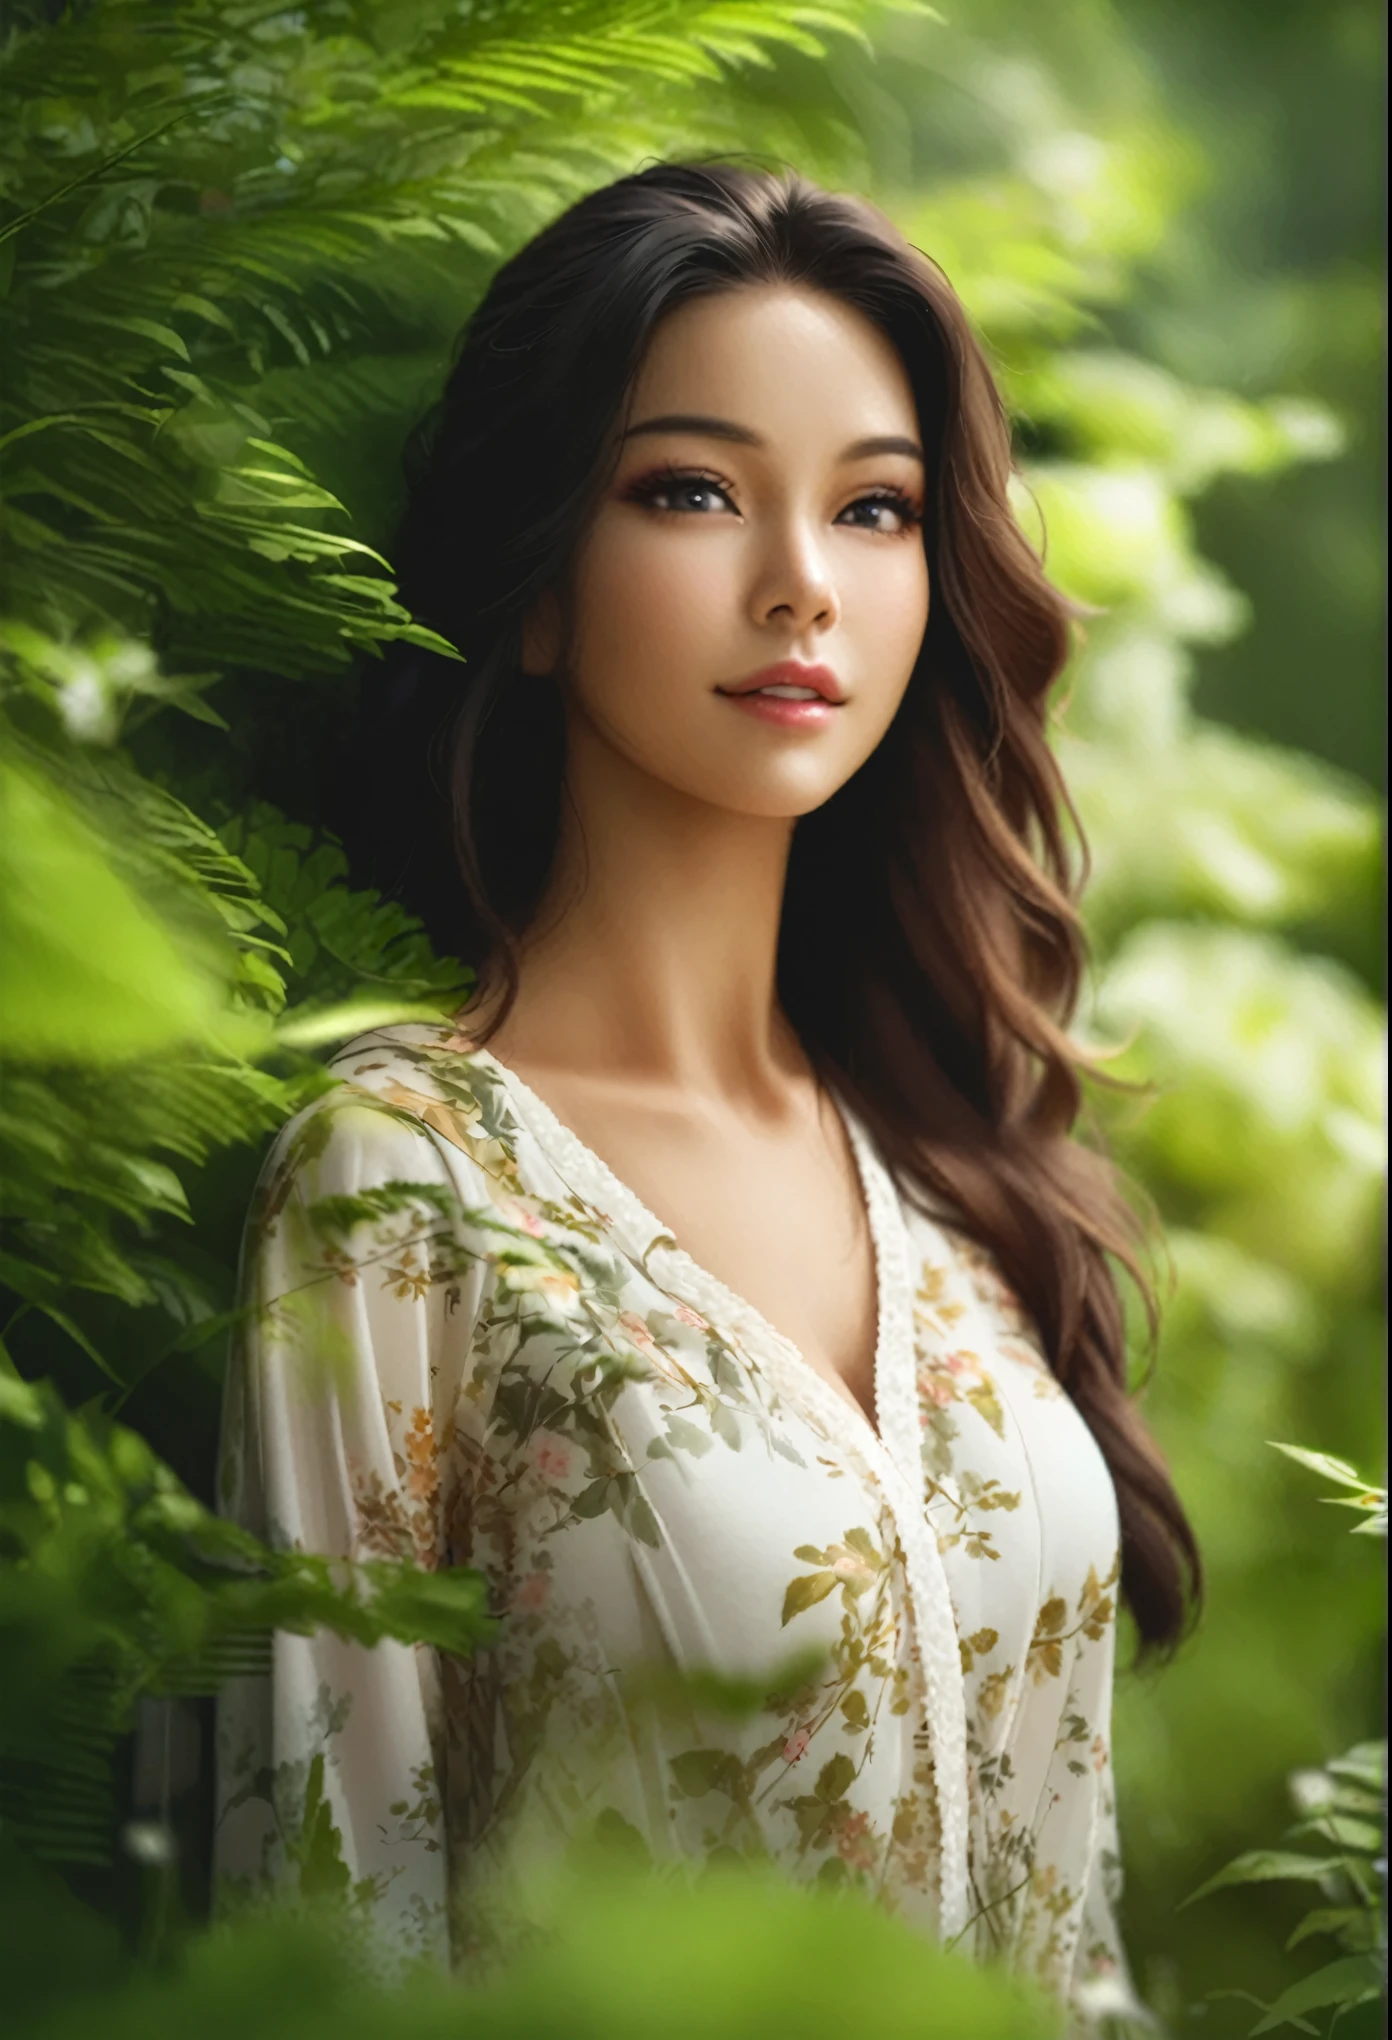 木材々たくさんの花が咲く森の中に立つ、胸の大きな女性のクローズアップ, 美しい女性の写真, ゴージャスな女性, 美しい東洋の女性, 素晴らしい女性, 素敵な女性, 美しい女性モデル, 美しいアジア人女性, 美しいモデルのポートレート, とても美しい女性, 緑豊かな環境, 美しい若い女性, 70mmポートレート